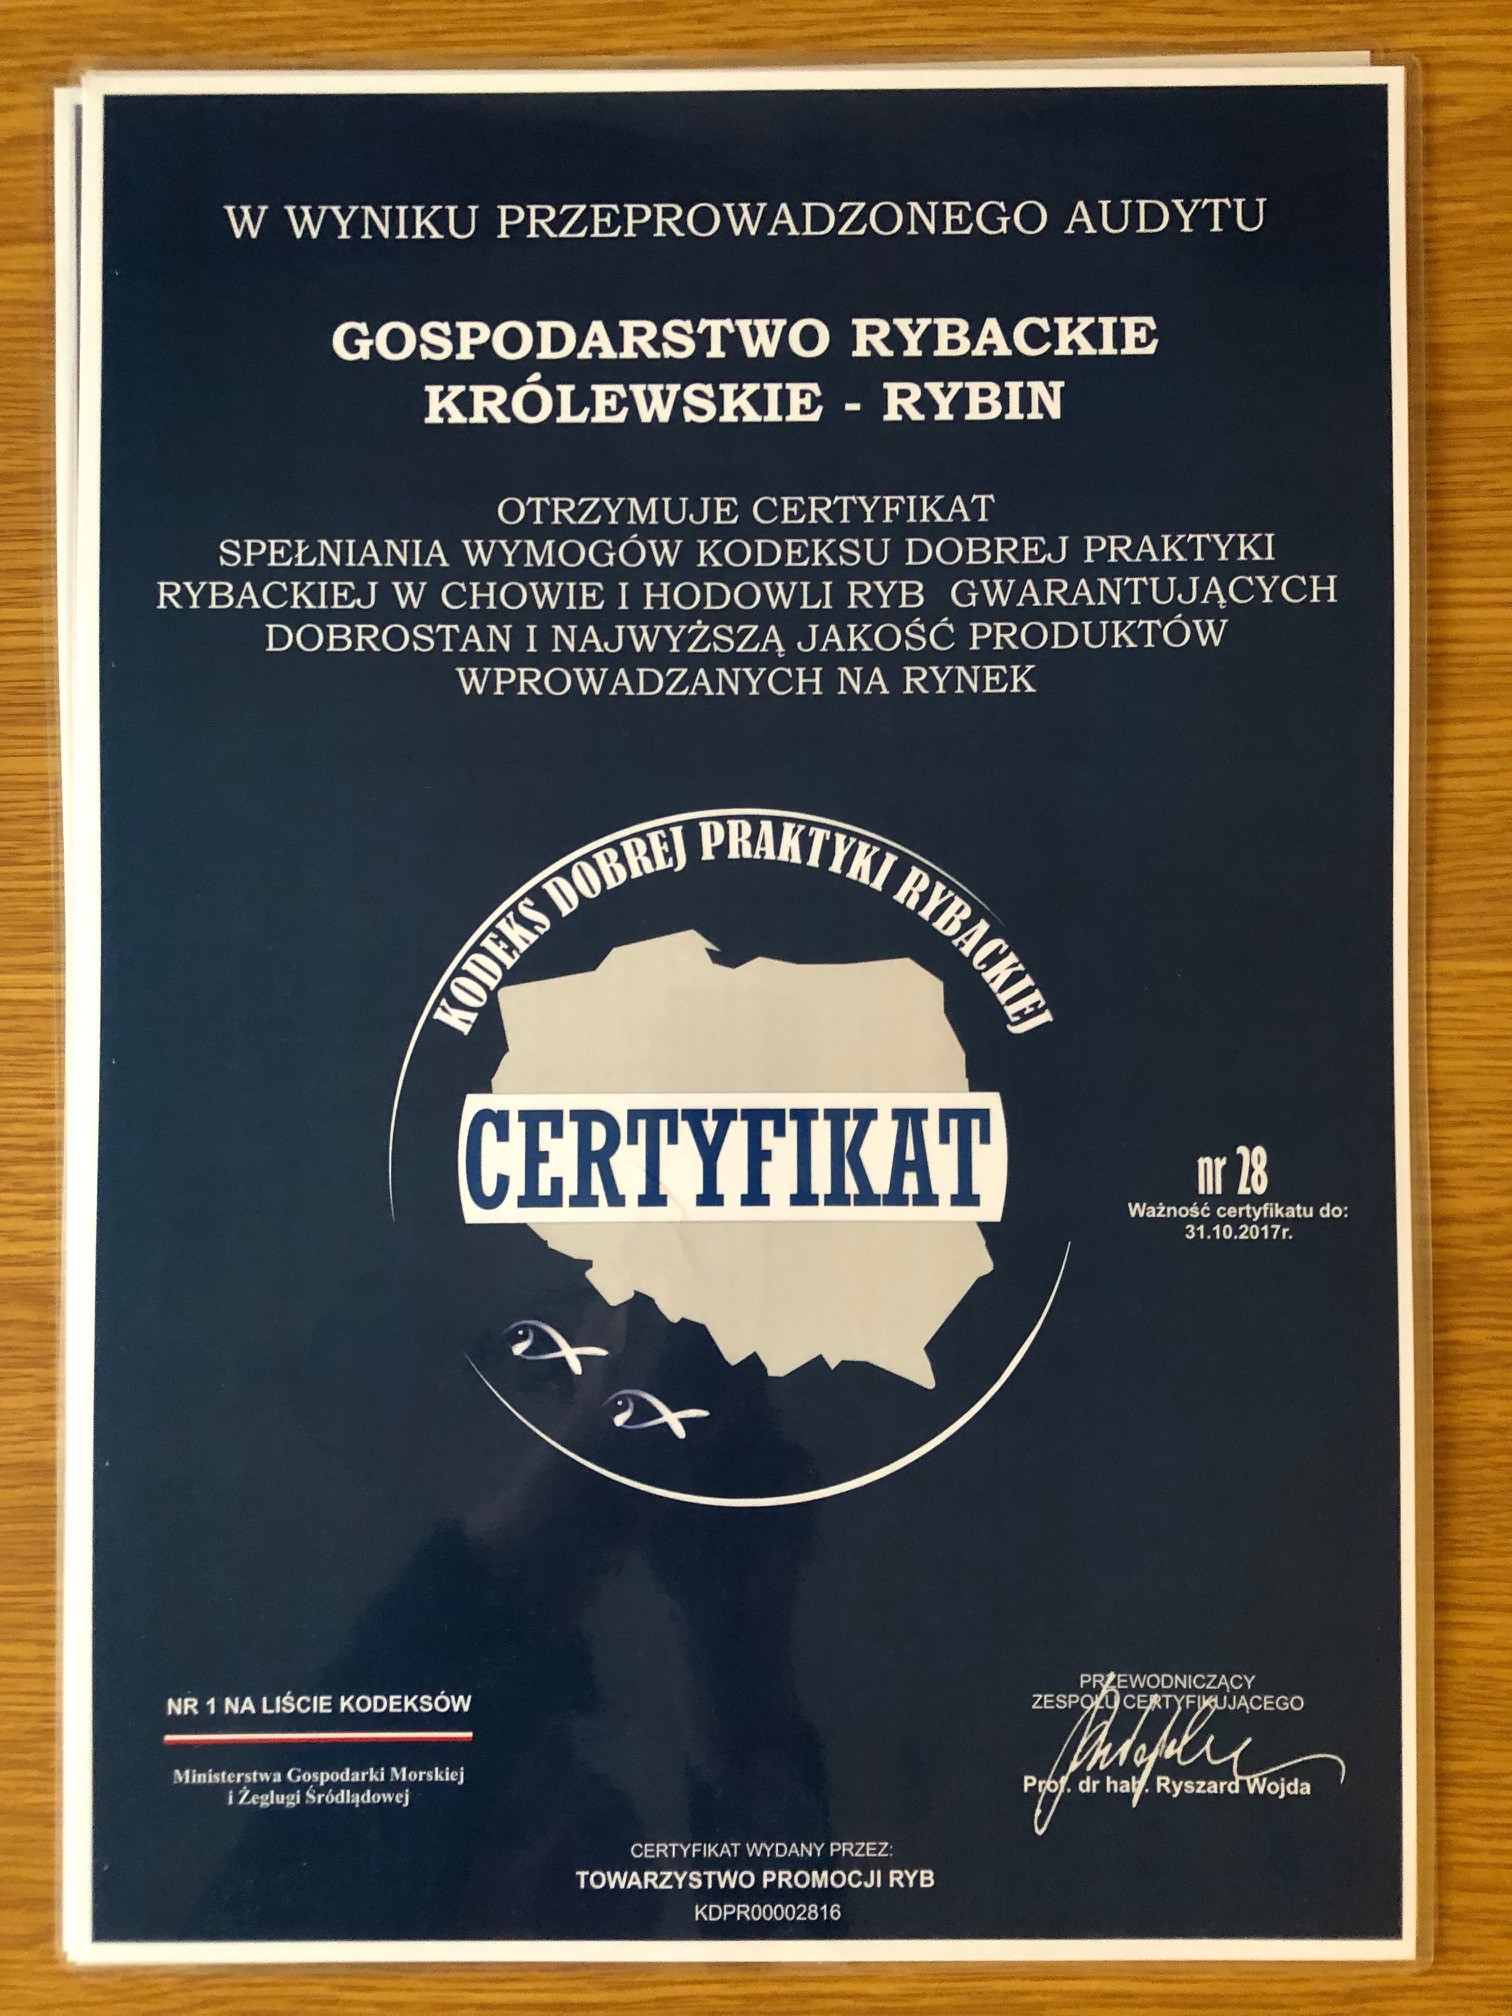 Certyfikat Kodeksu Dobrej Praktyki Rybackiej na 2016 rok